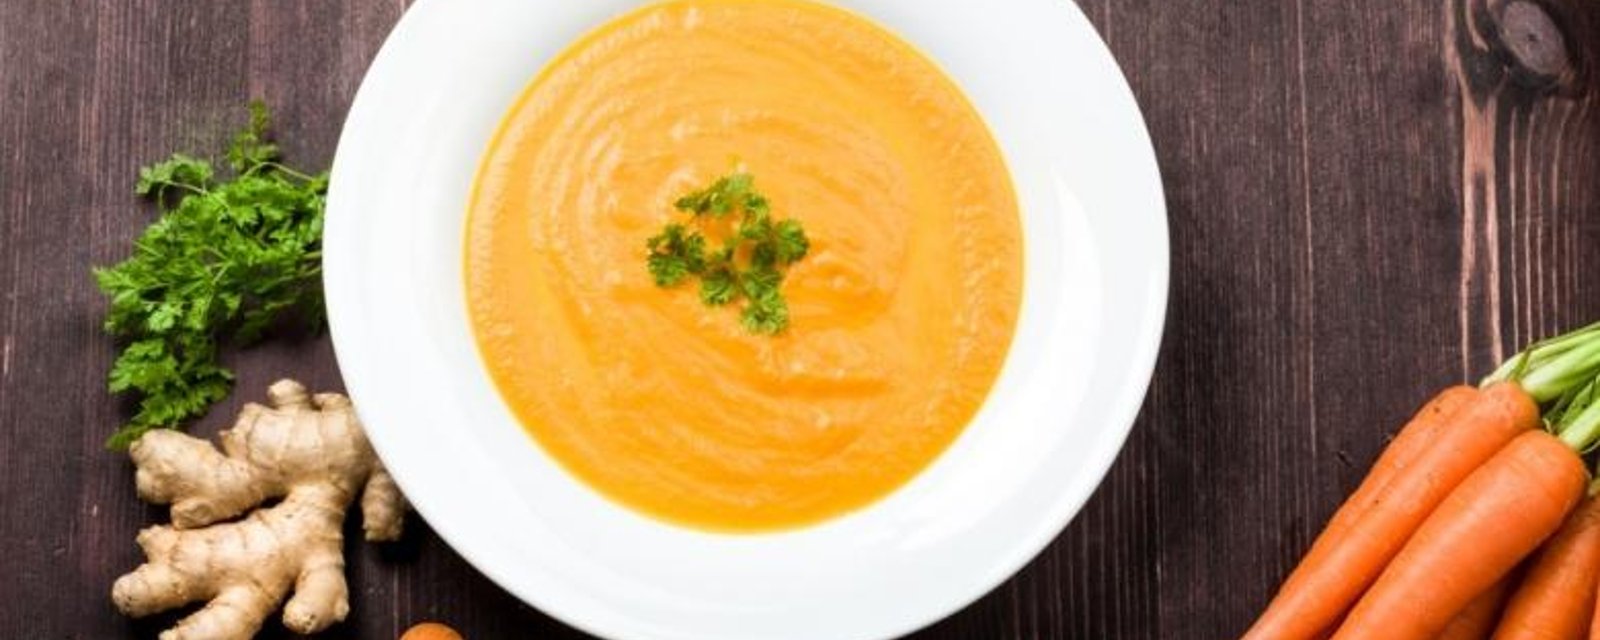 Potage aux carottes, une version simple et rapide 